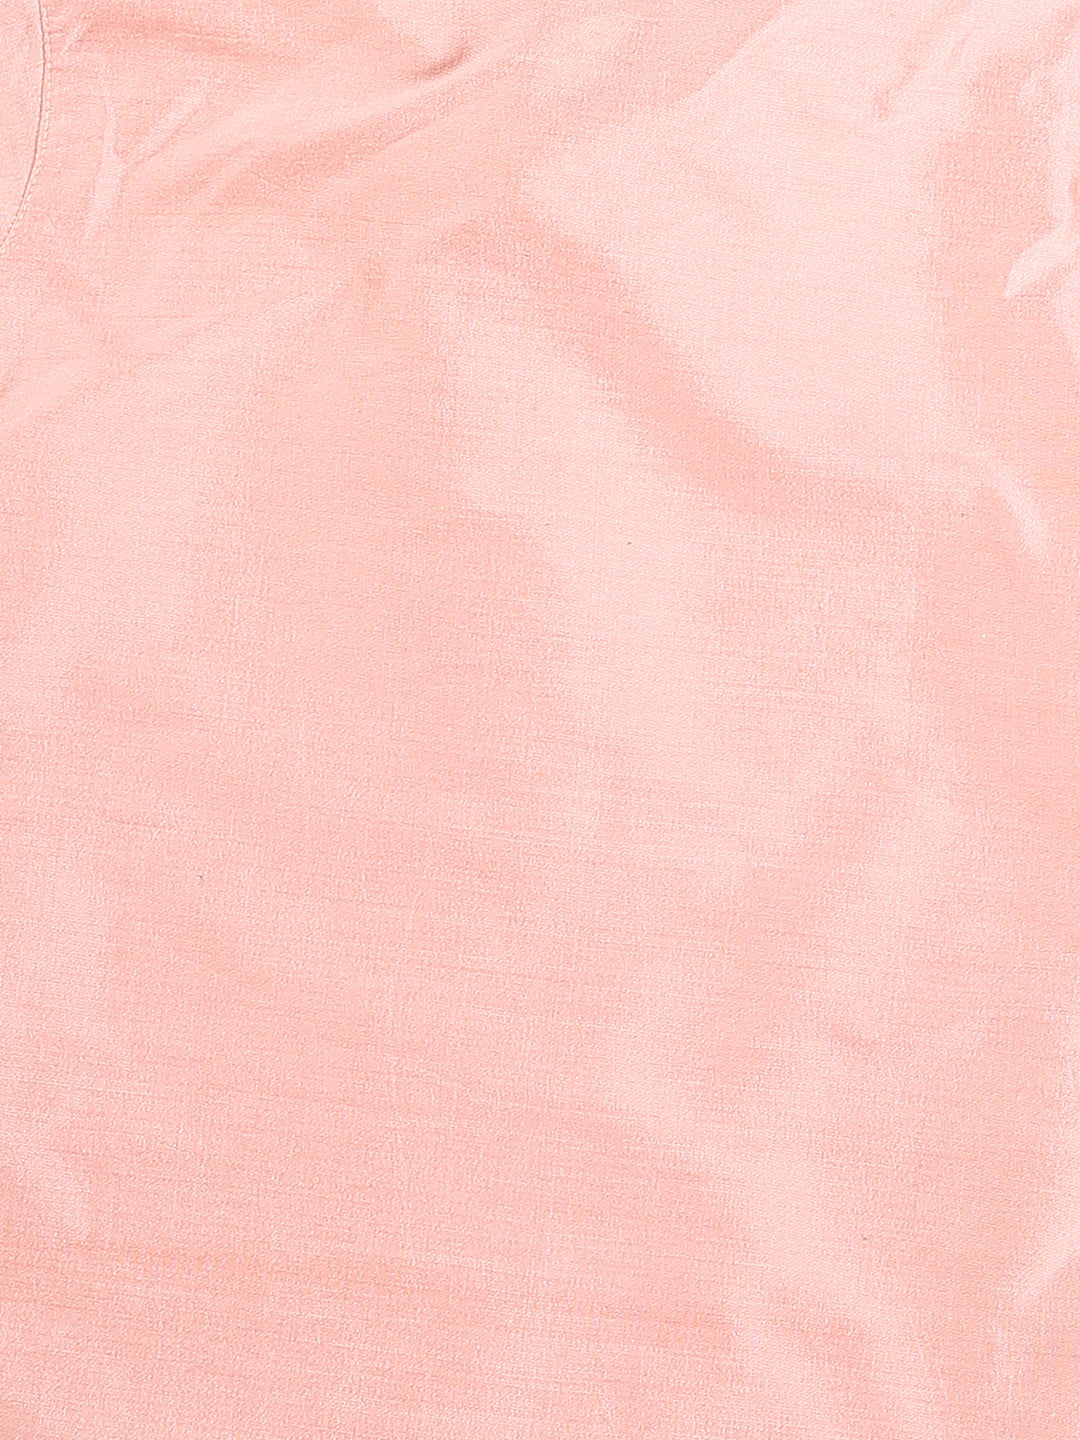 Vastramay Viscose Fabric Pink Mirror Work Border Kurta And Pyjama Set for Boys - Distacart